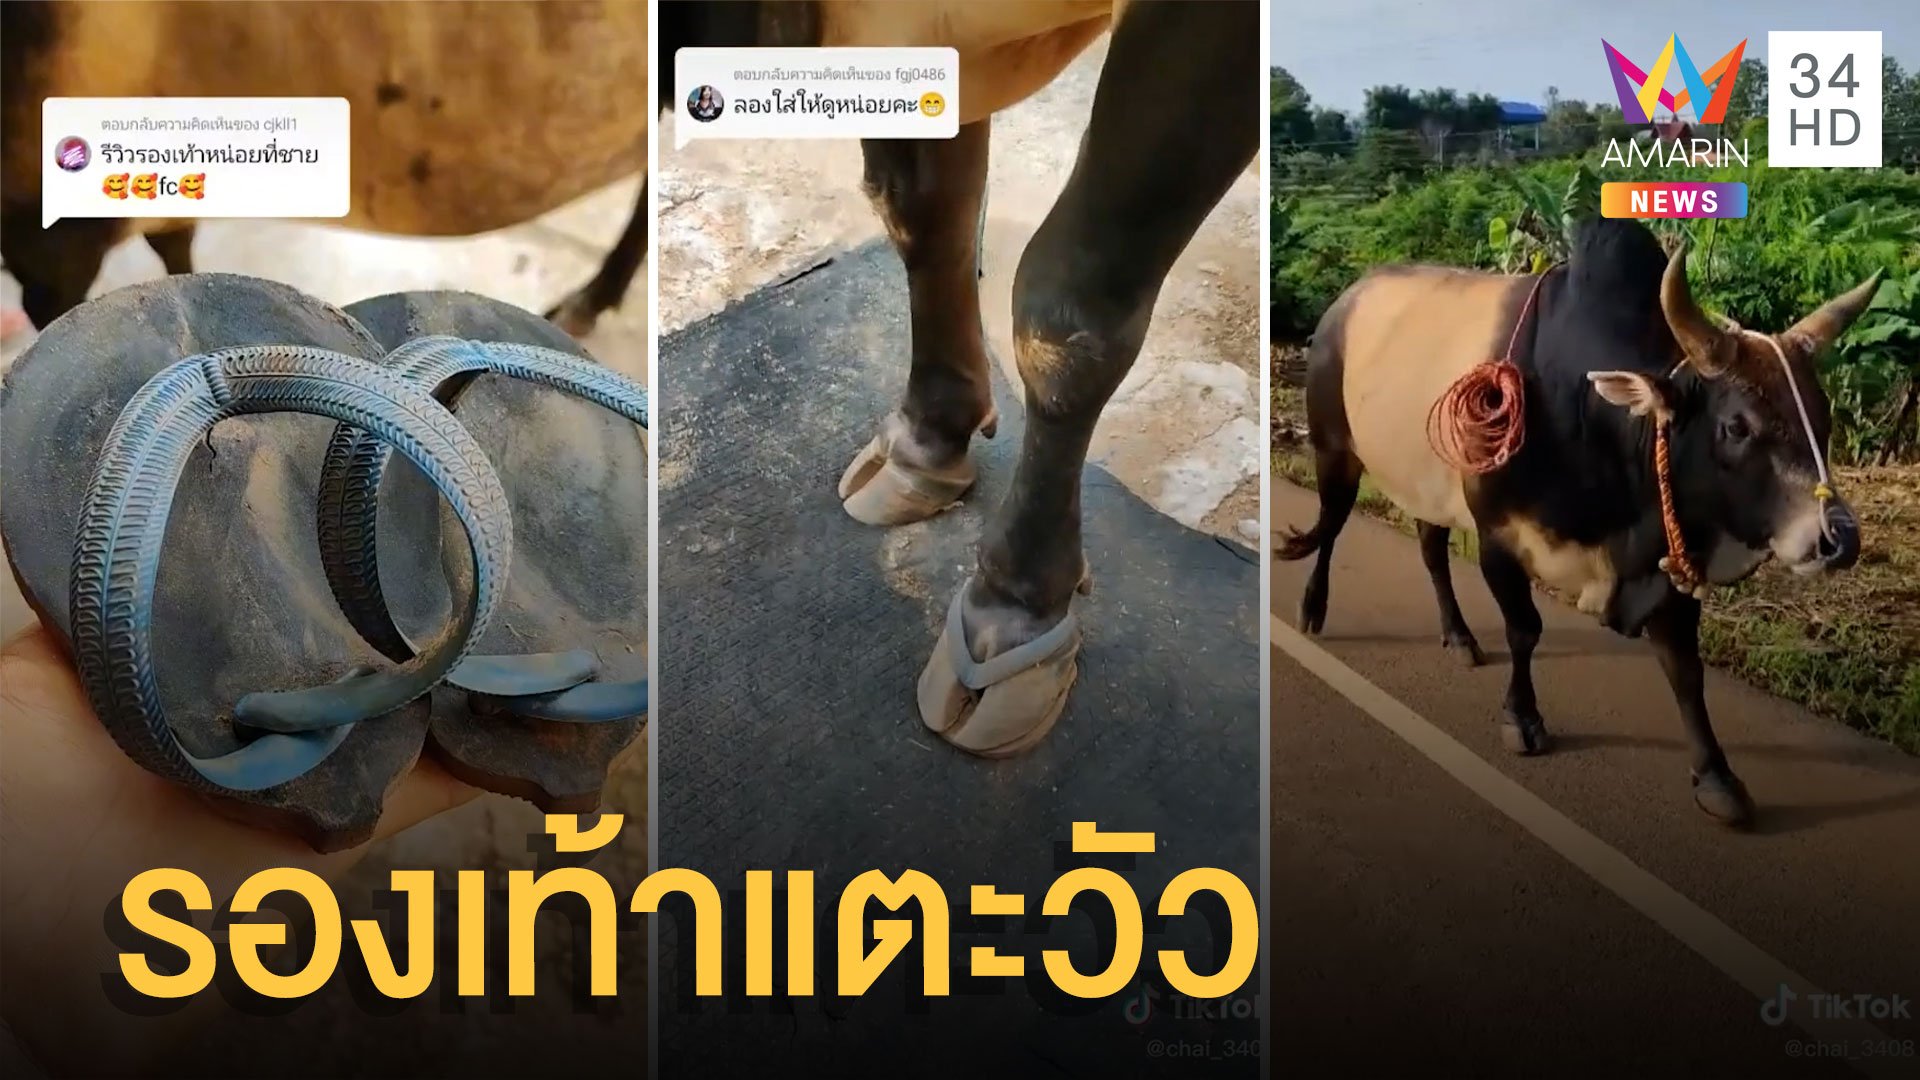 รีวิวการใส่รองเท้าแตะหนีบให้วัวชน เดินไกลๆ พื้นร้อนสงสารน้อง | ข่าวอรุณอมรินทร์ | 6 ส.ค. 65 | AMARIN TVHD34